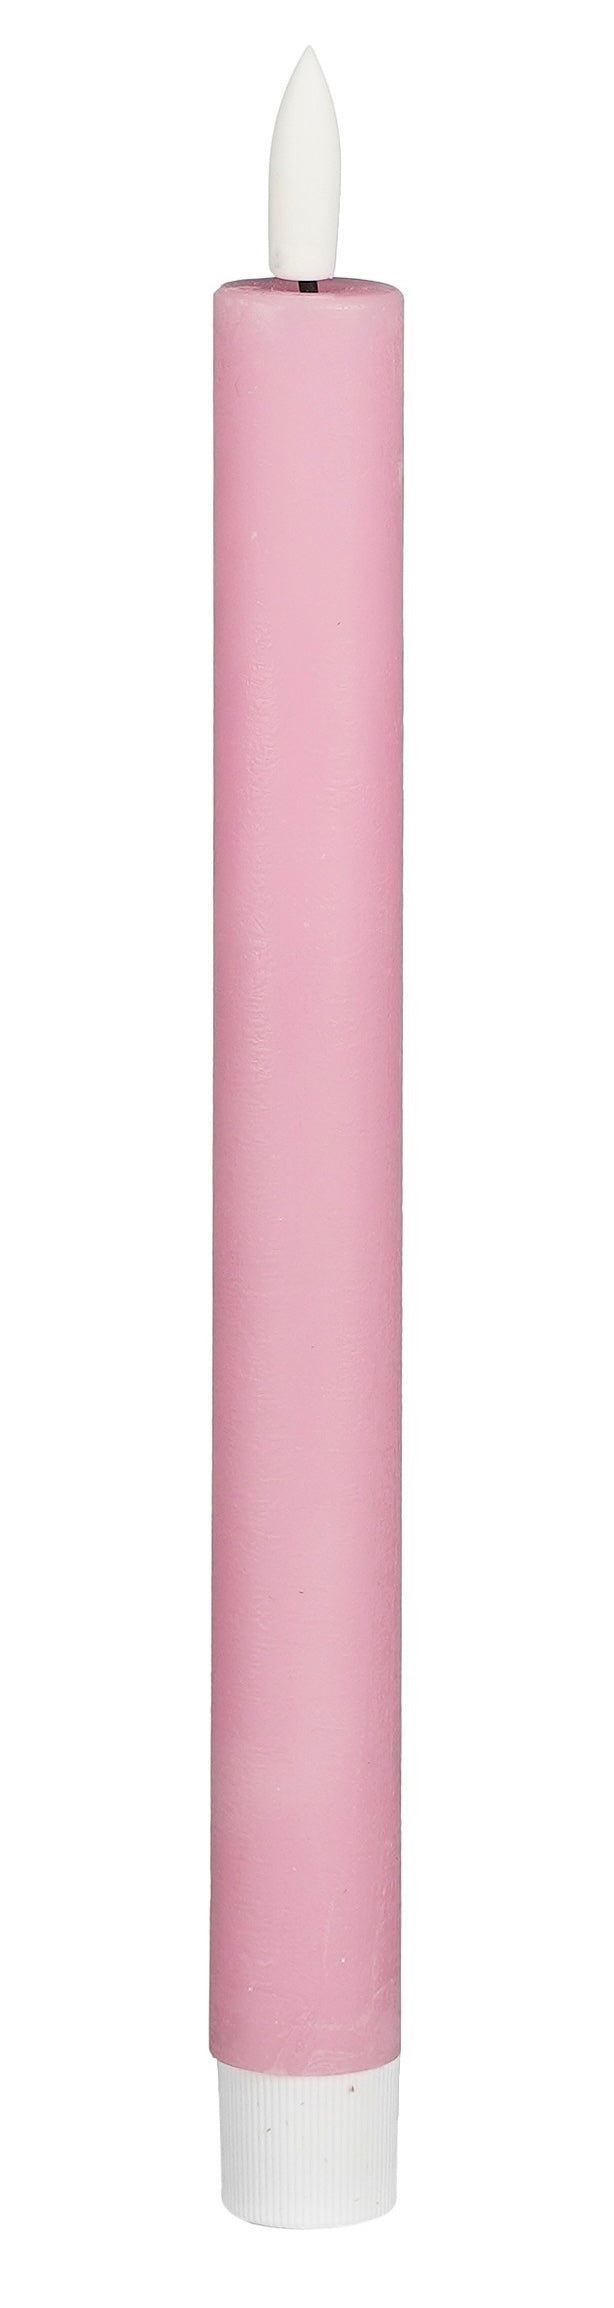 LED kaarsen roze (set van 2) - RUBY Conceptstore 